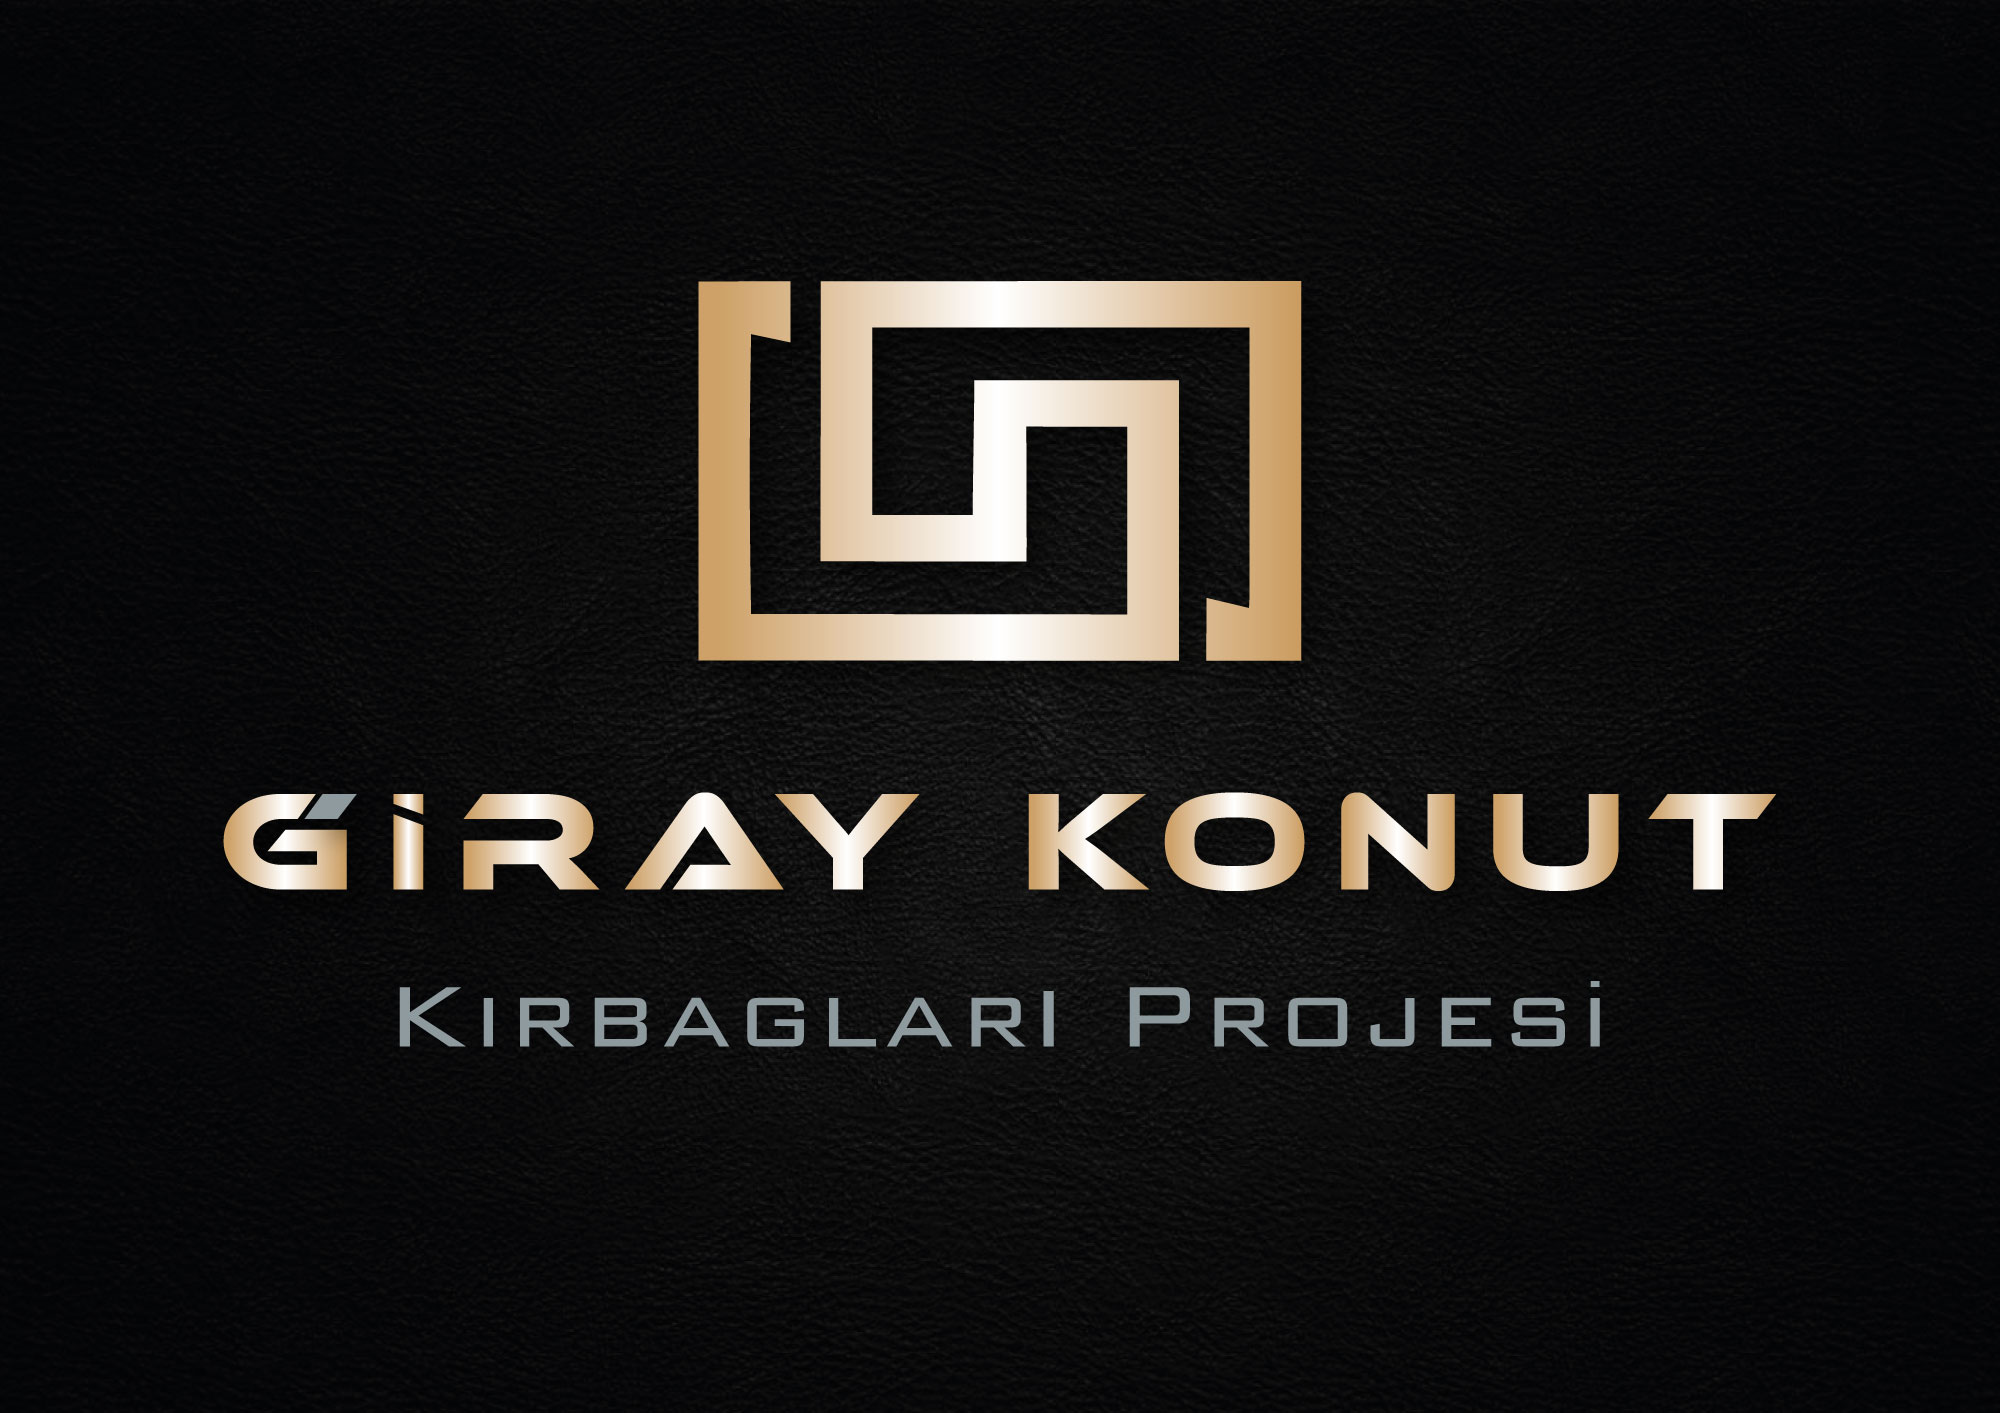 Giray Konut - Kırbağları Projesi 1 